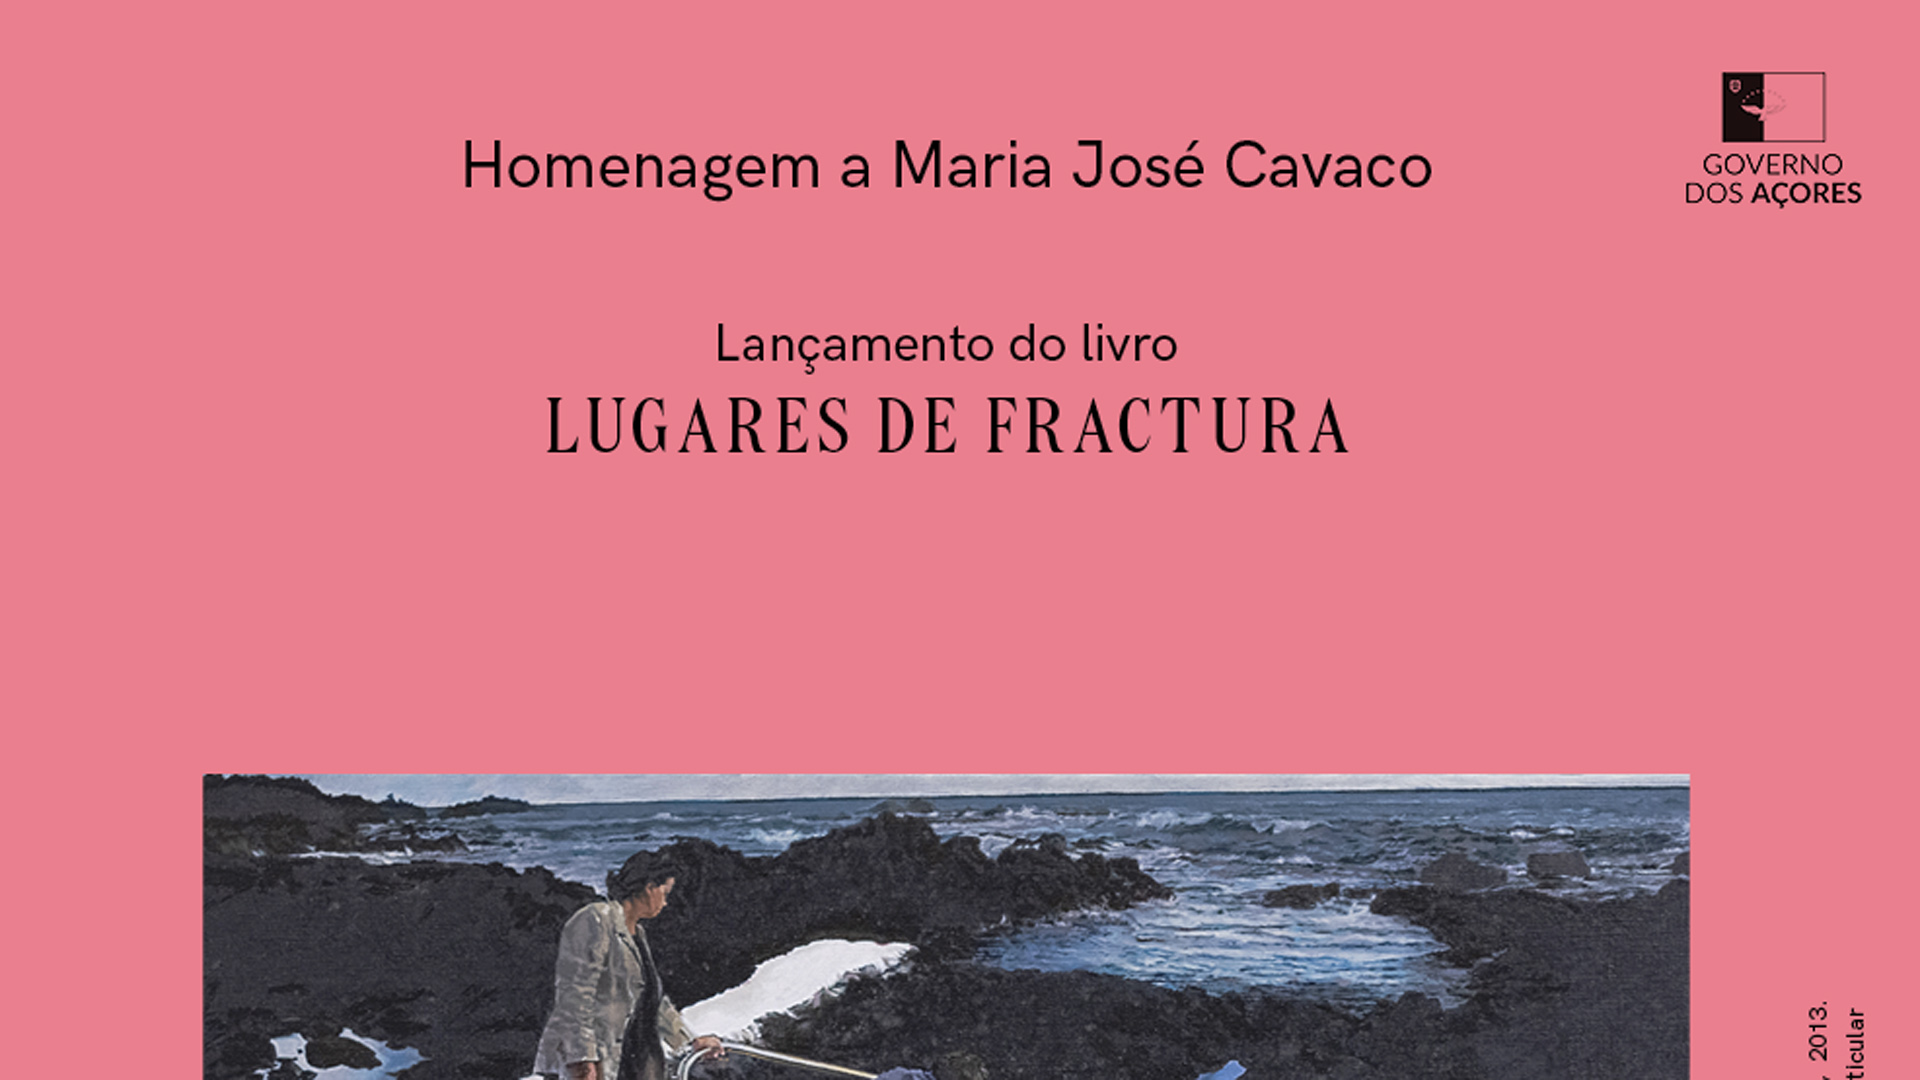 Governo dos Açores homenageia Maria José Cavaco